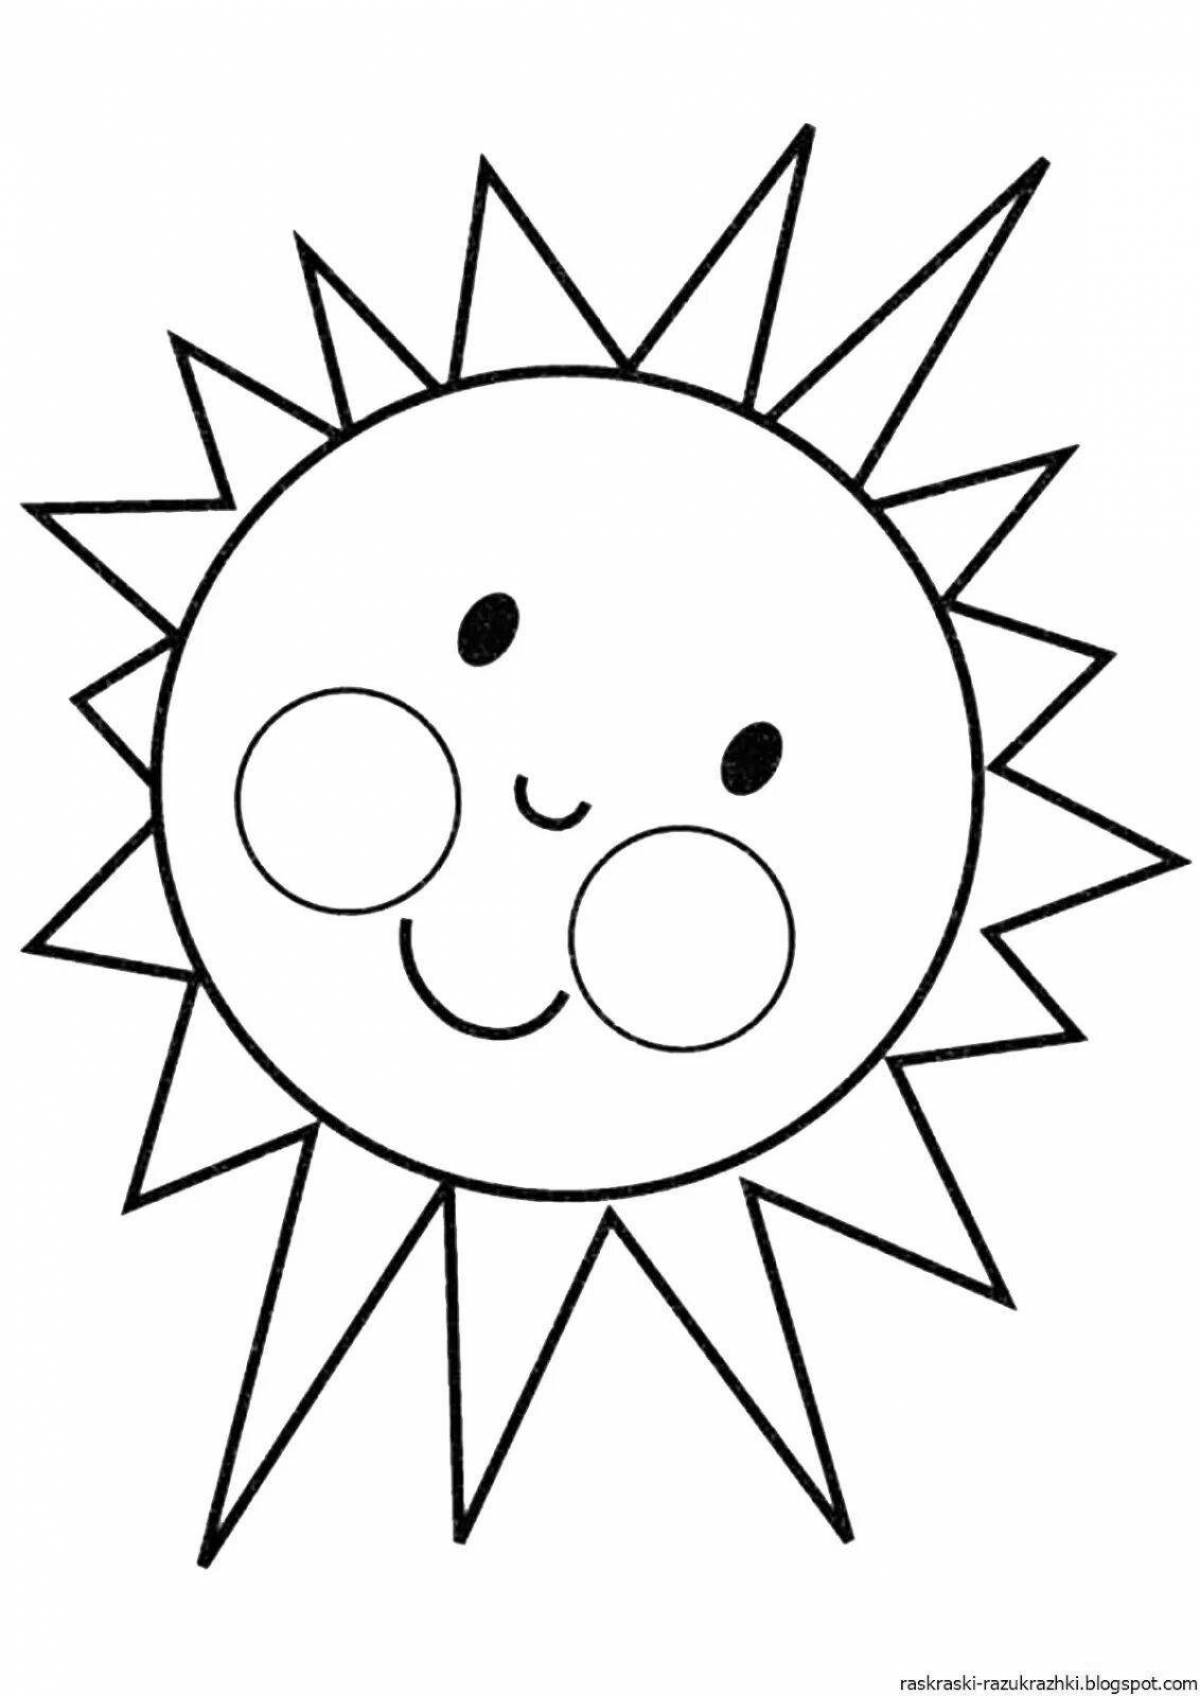 Как нарисовать Солнышко - Раскраска Солнце для детей - Рисунки Раскраски